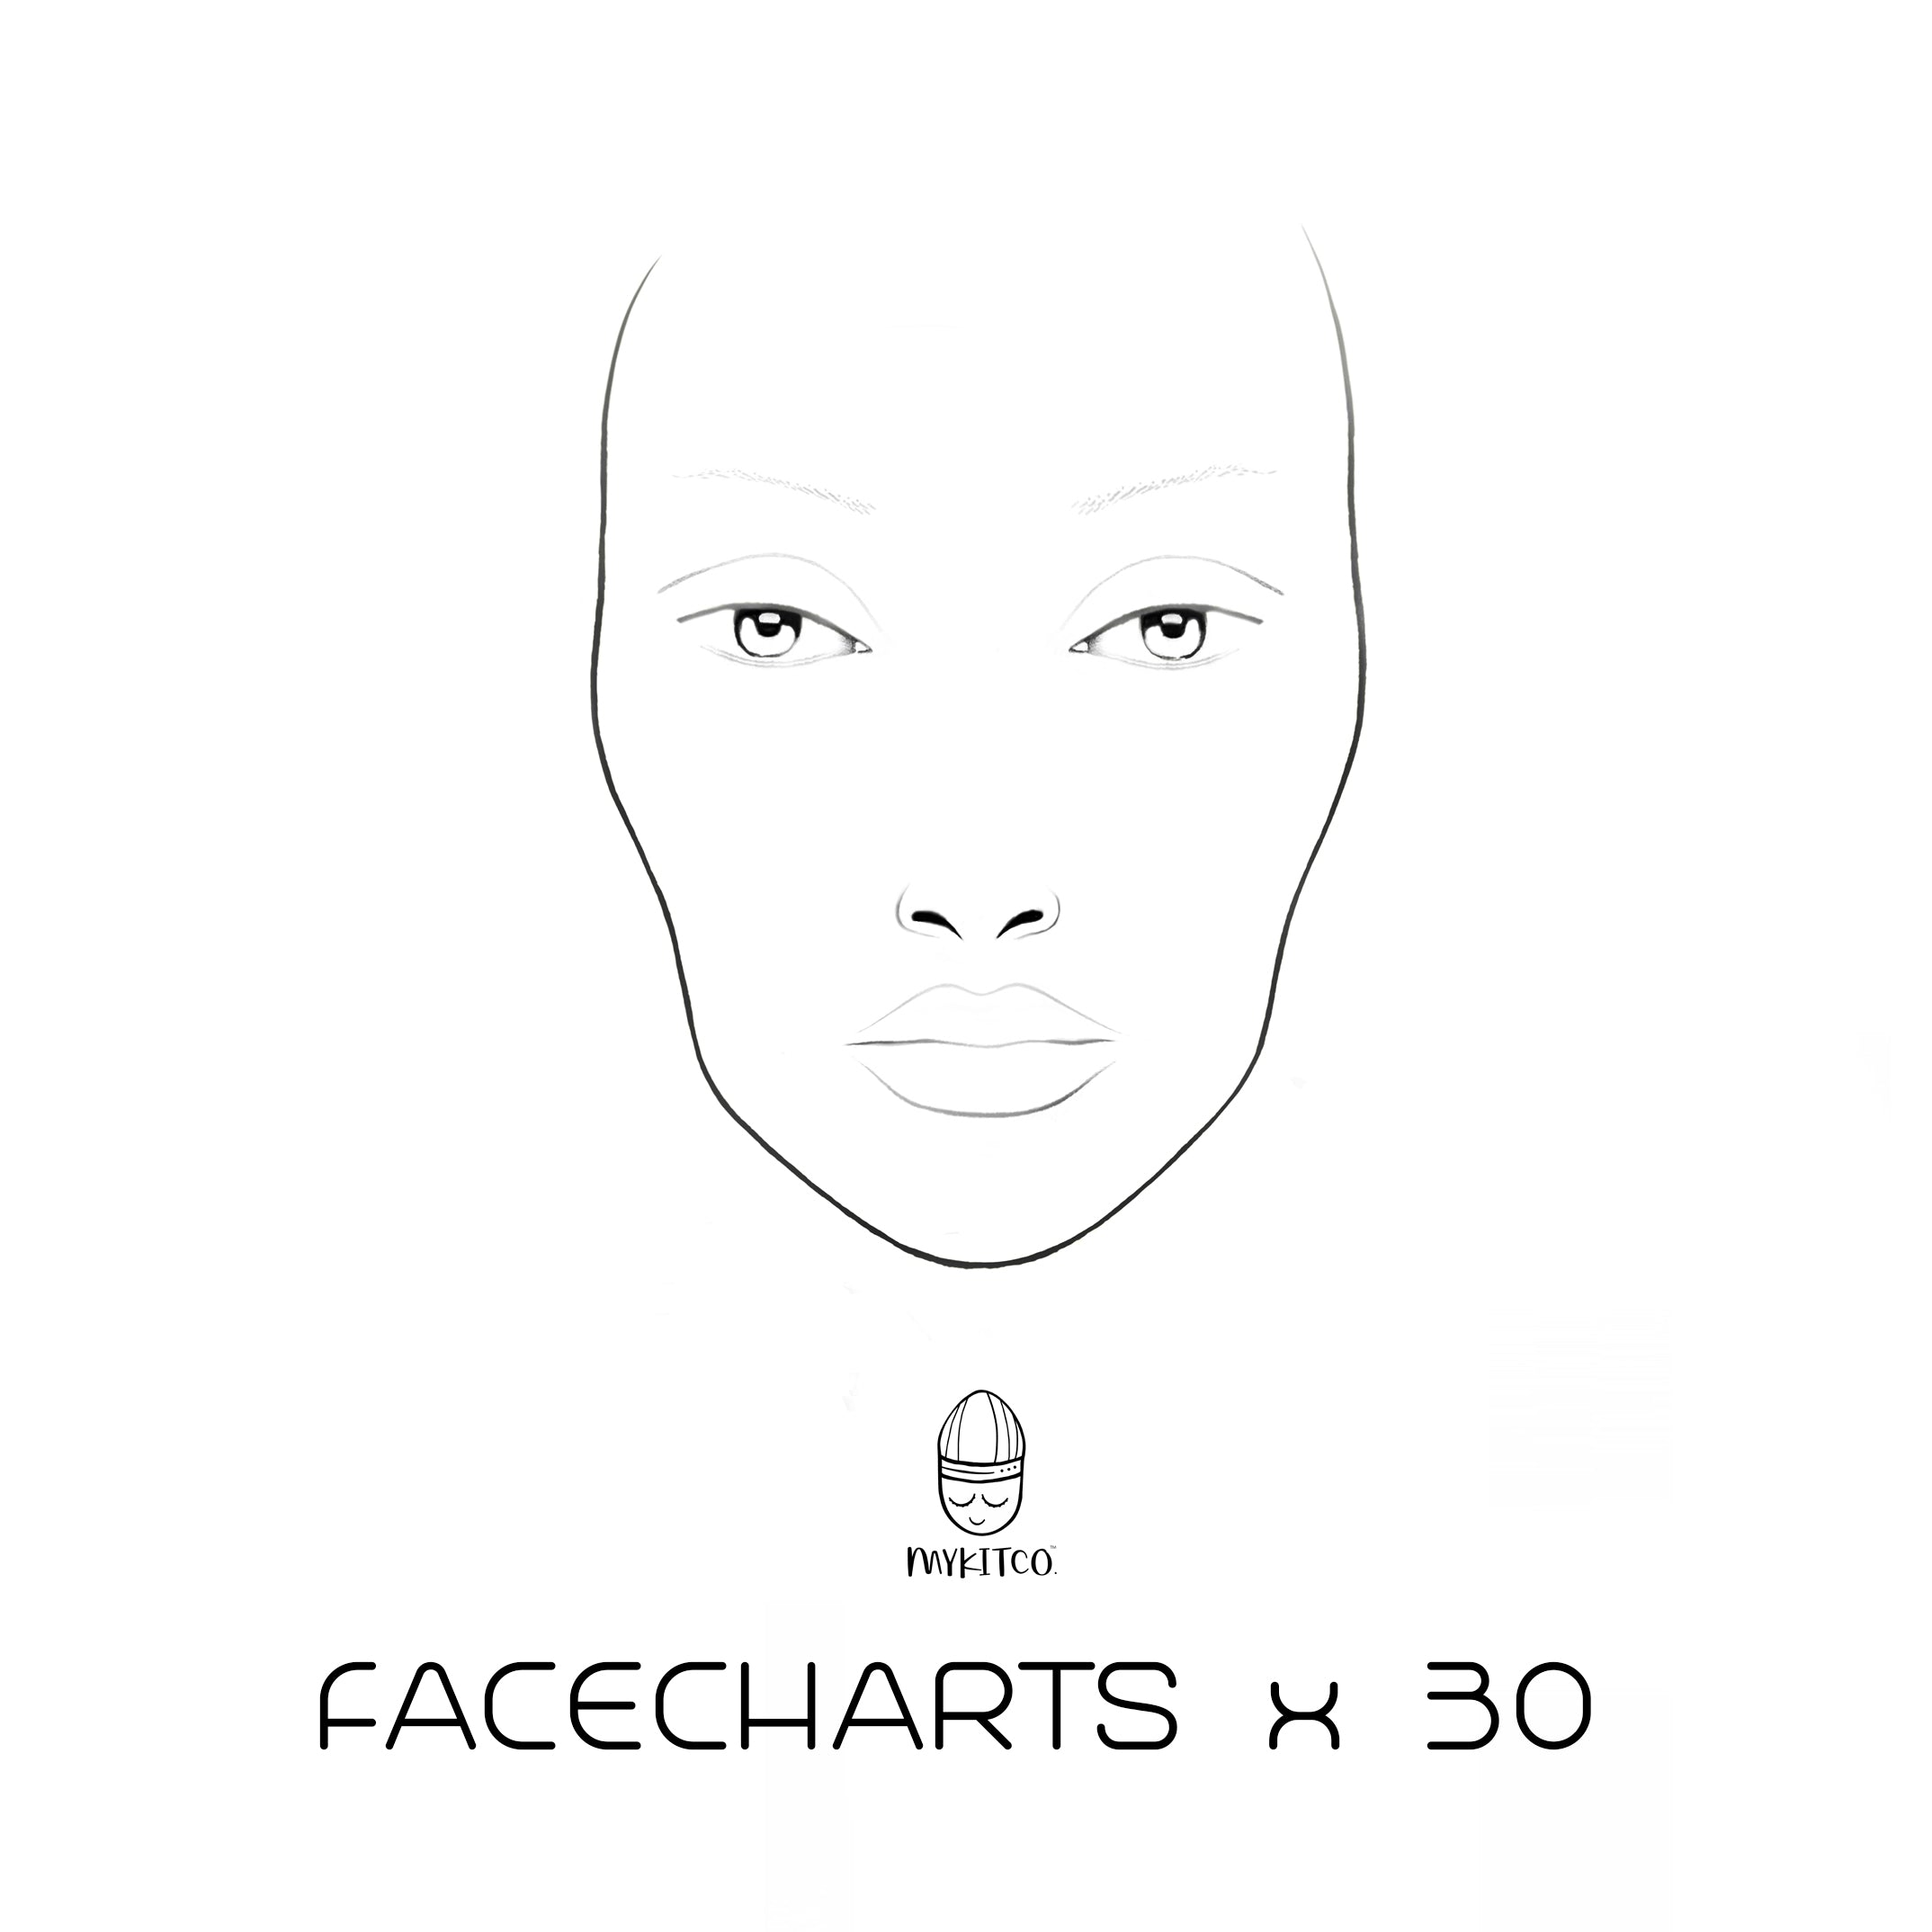 My Face Charts Mykitco